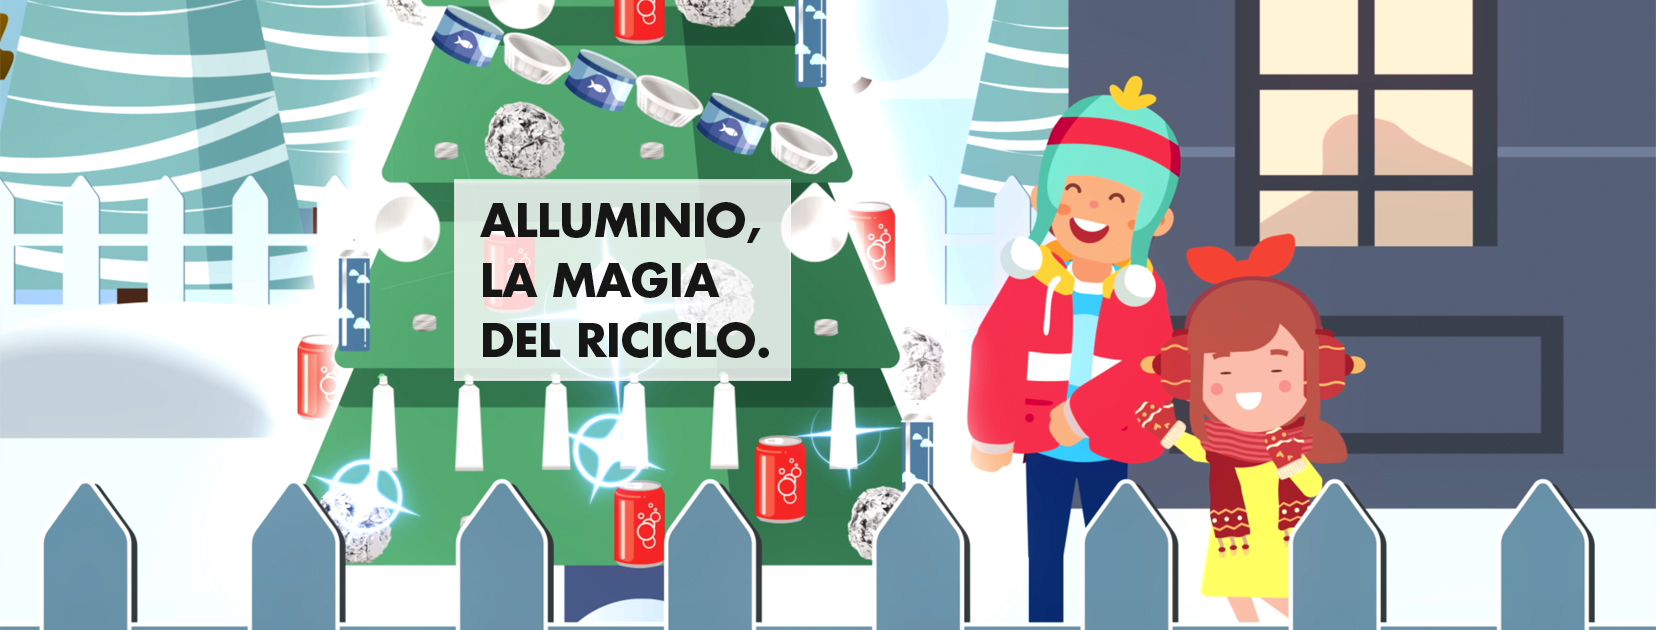 Take firma il video di Natale CIAL “Alluminio, la magia del riciclo”